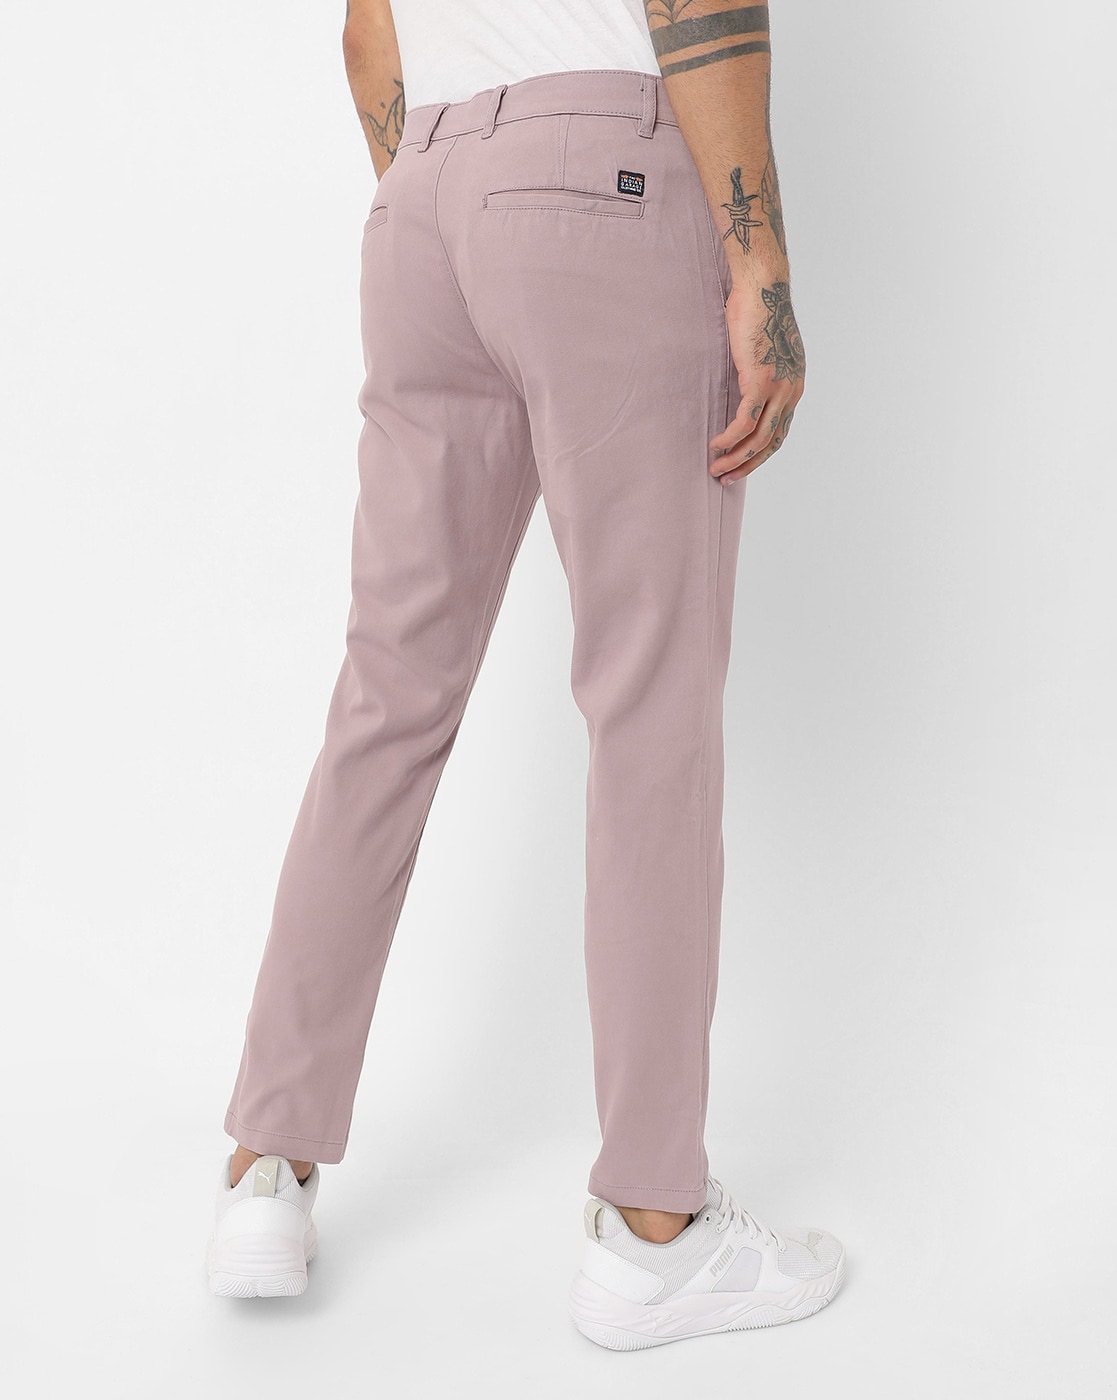 Buy Highlander Pink Slim Fit Trouser for Men Online at Rs814  Ketch